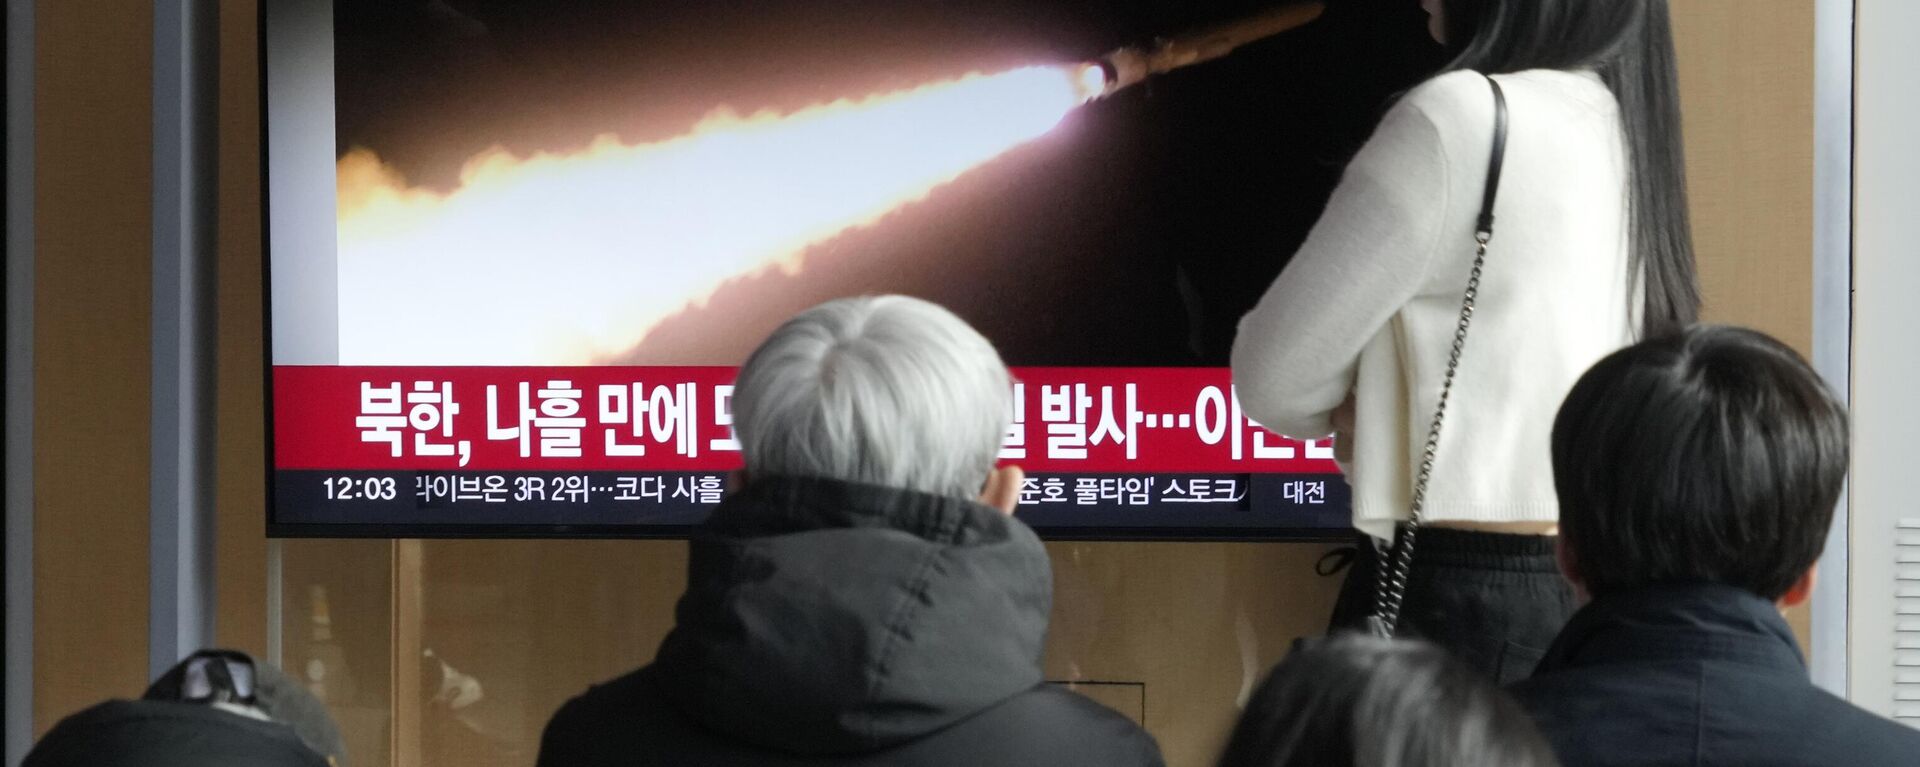 Tela de TV na estação ferroviária de Seul mostra imagem de arquivo do lançamento de um míssil da Coreia do Norte durante um programa de notícias, Coreia do Sul, 28 de janeiro de 2024 - Sputnik Brasil, 1920, 28.01.2024